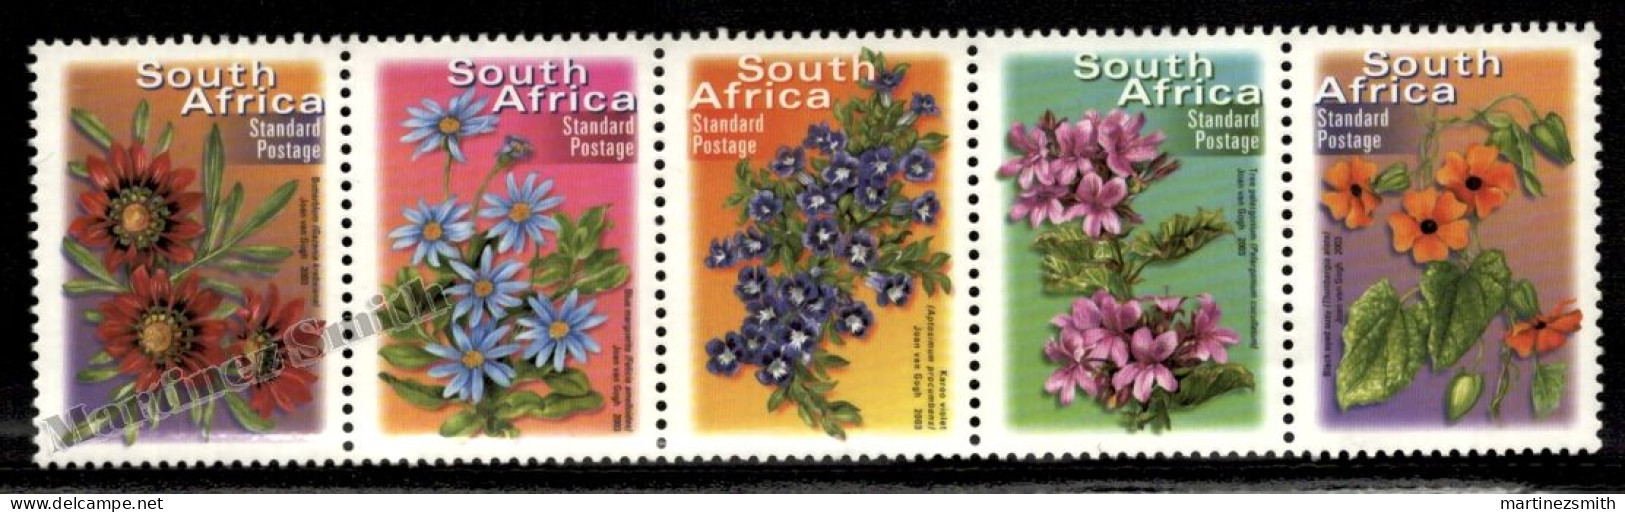 South Africa - Afrique Du Sud - Africa Sur 2001 Yvert  1159 - 63 -Definitive, Flowers - 2007 Reprint - MNH - Ongebruikt